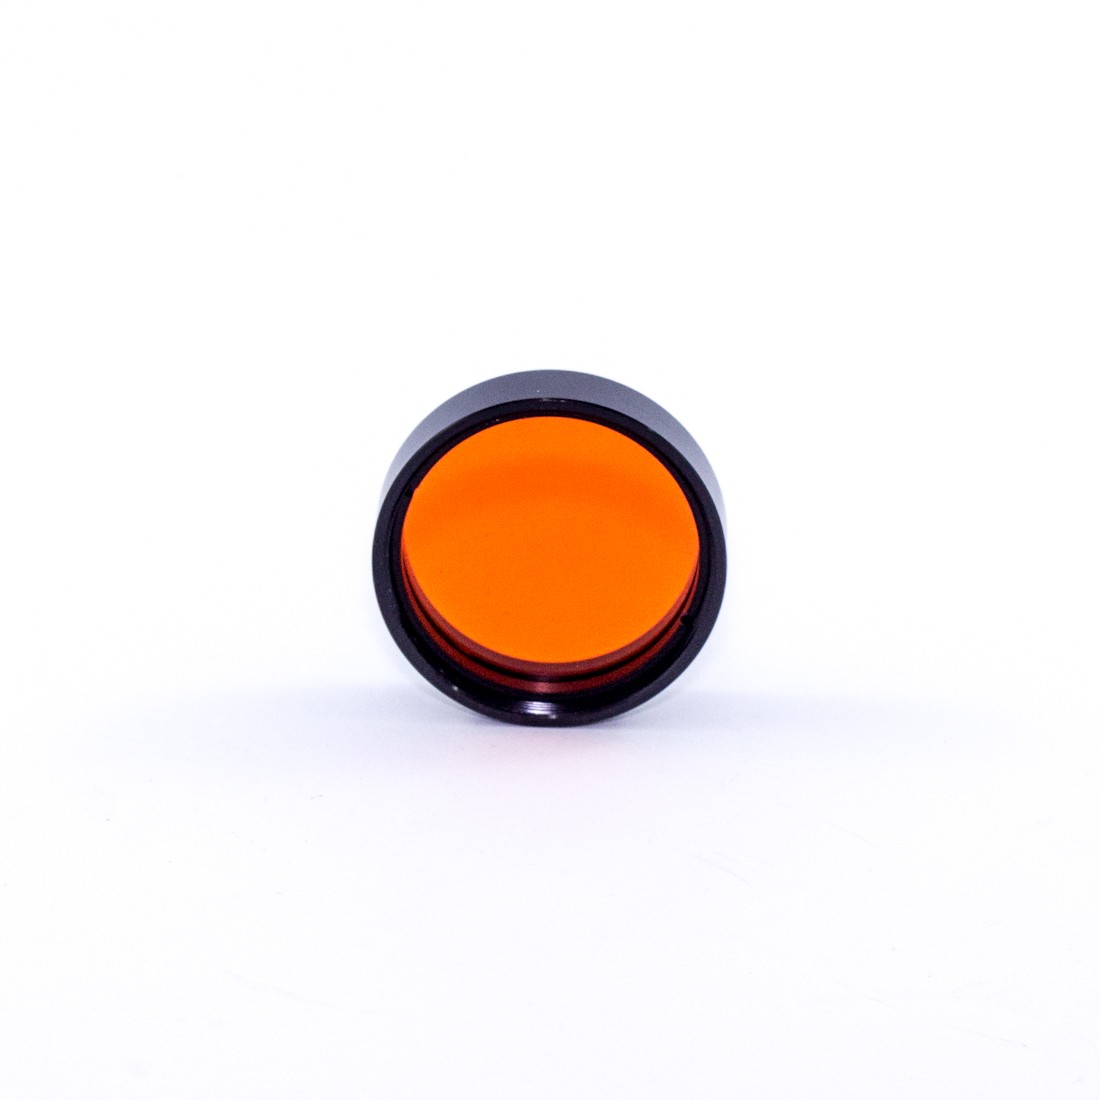 Sirius Colour Filter No. 21 Orange